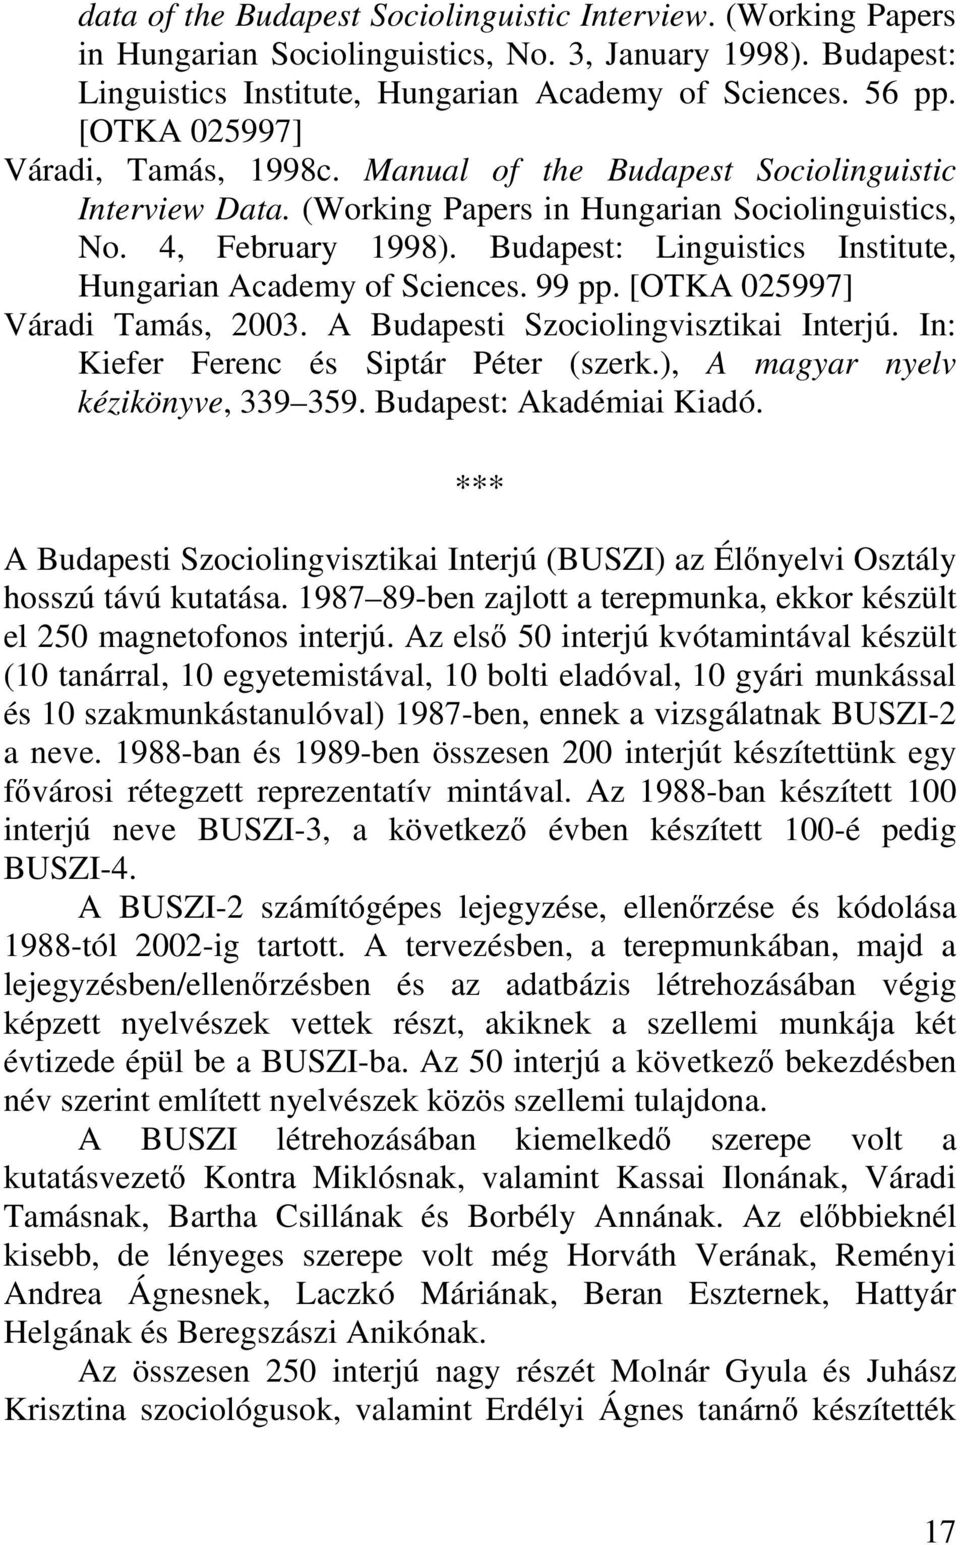 Budapest: Linguistics Institute, Hungarian Academy of Sciences. 99 pp. [OTKA 025997] Váradi Tamás, 2003. A Budapesti Szociolingvisztikai Interjú. In: Kiefer Ferenc és Siptár Péter (szerk.